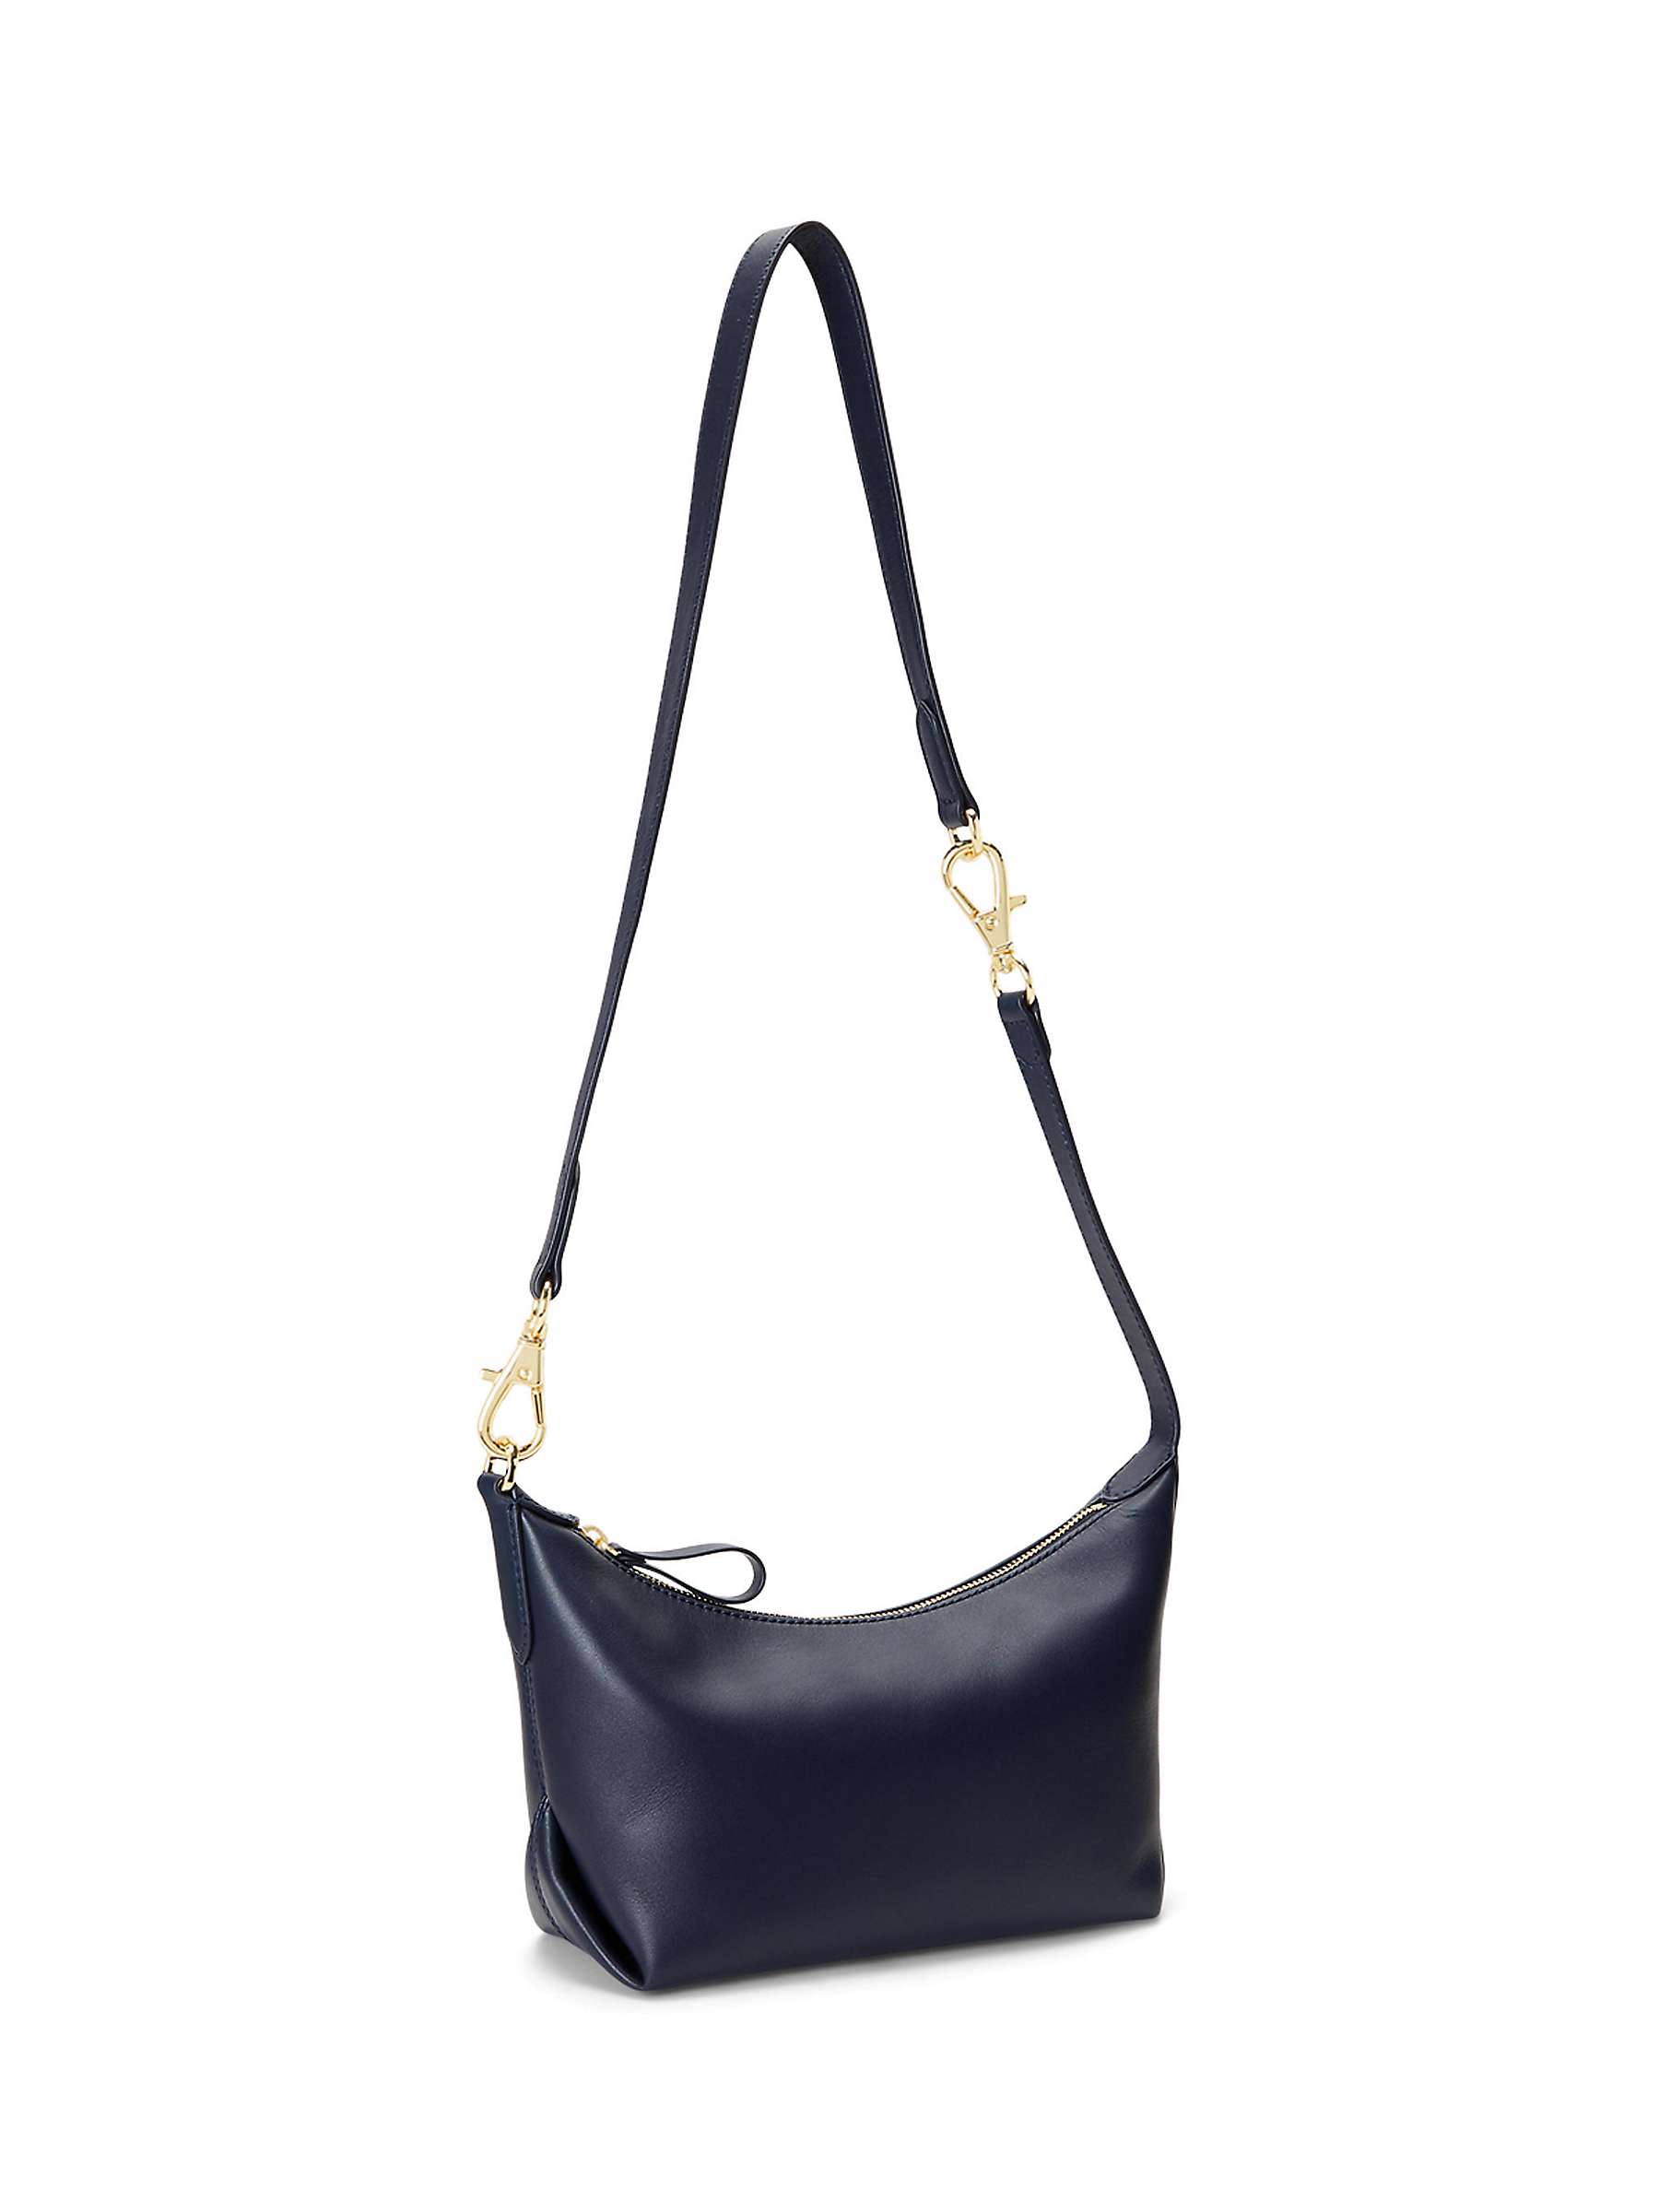 Buy Lauren Ralph Lauren Kassie Full Grain Leather Small Convertible Bag, Navy Online at johnlewis.com